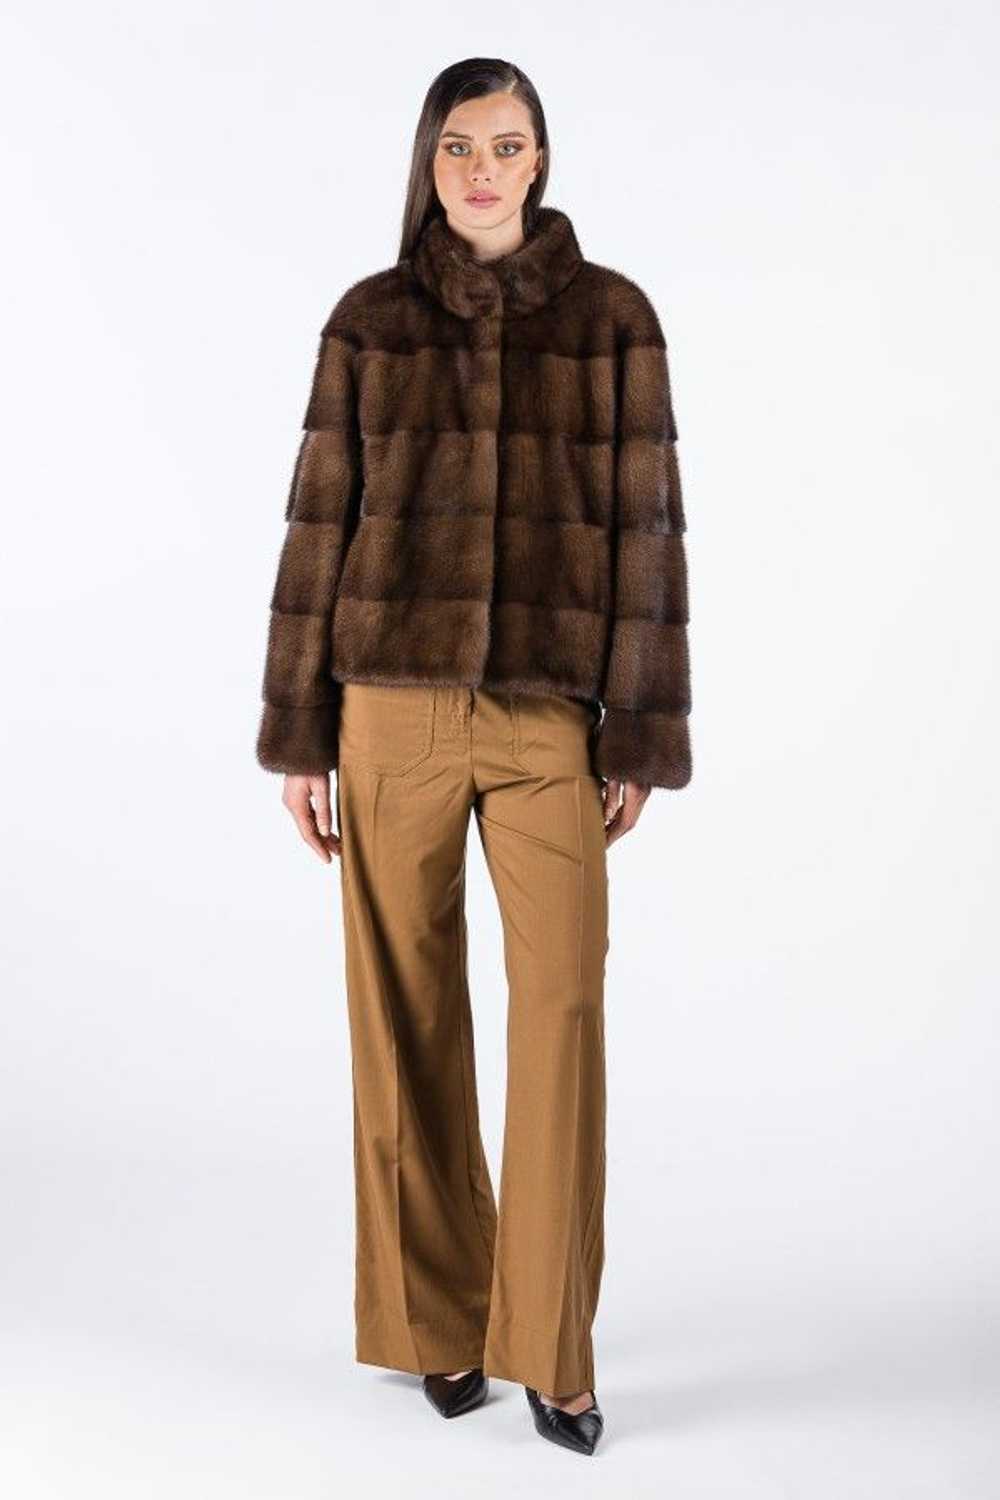 Mink Fur Coat WOMEN'S SHORT BROWN MINK COAT - image 1